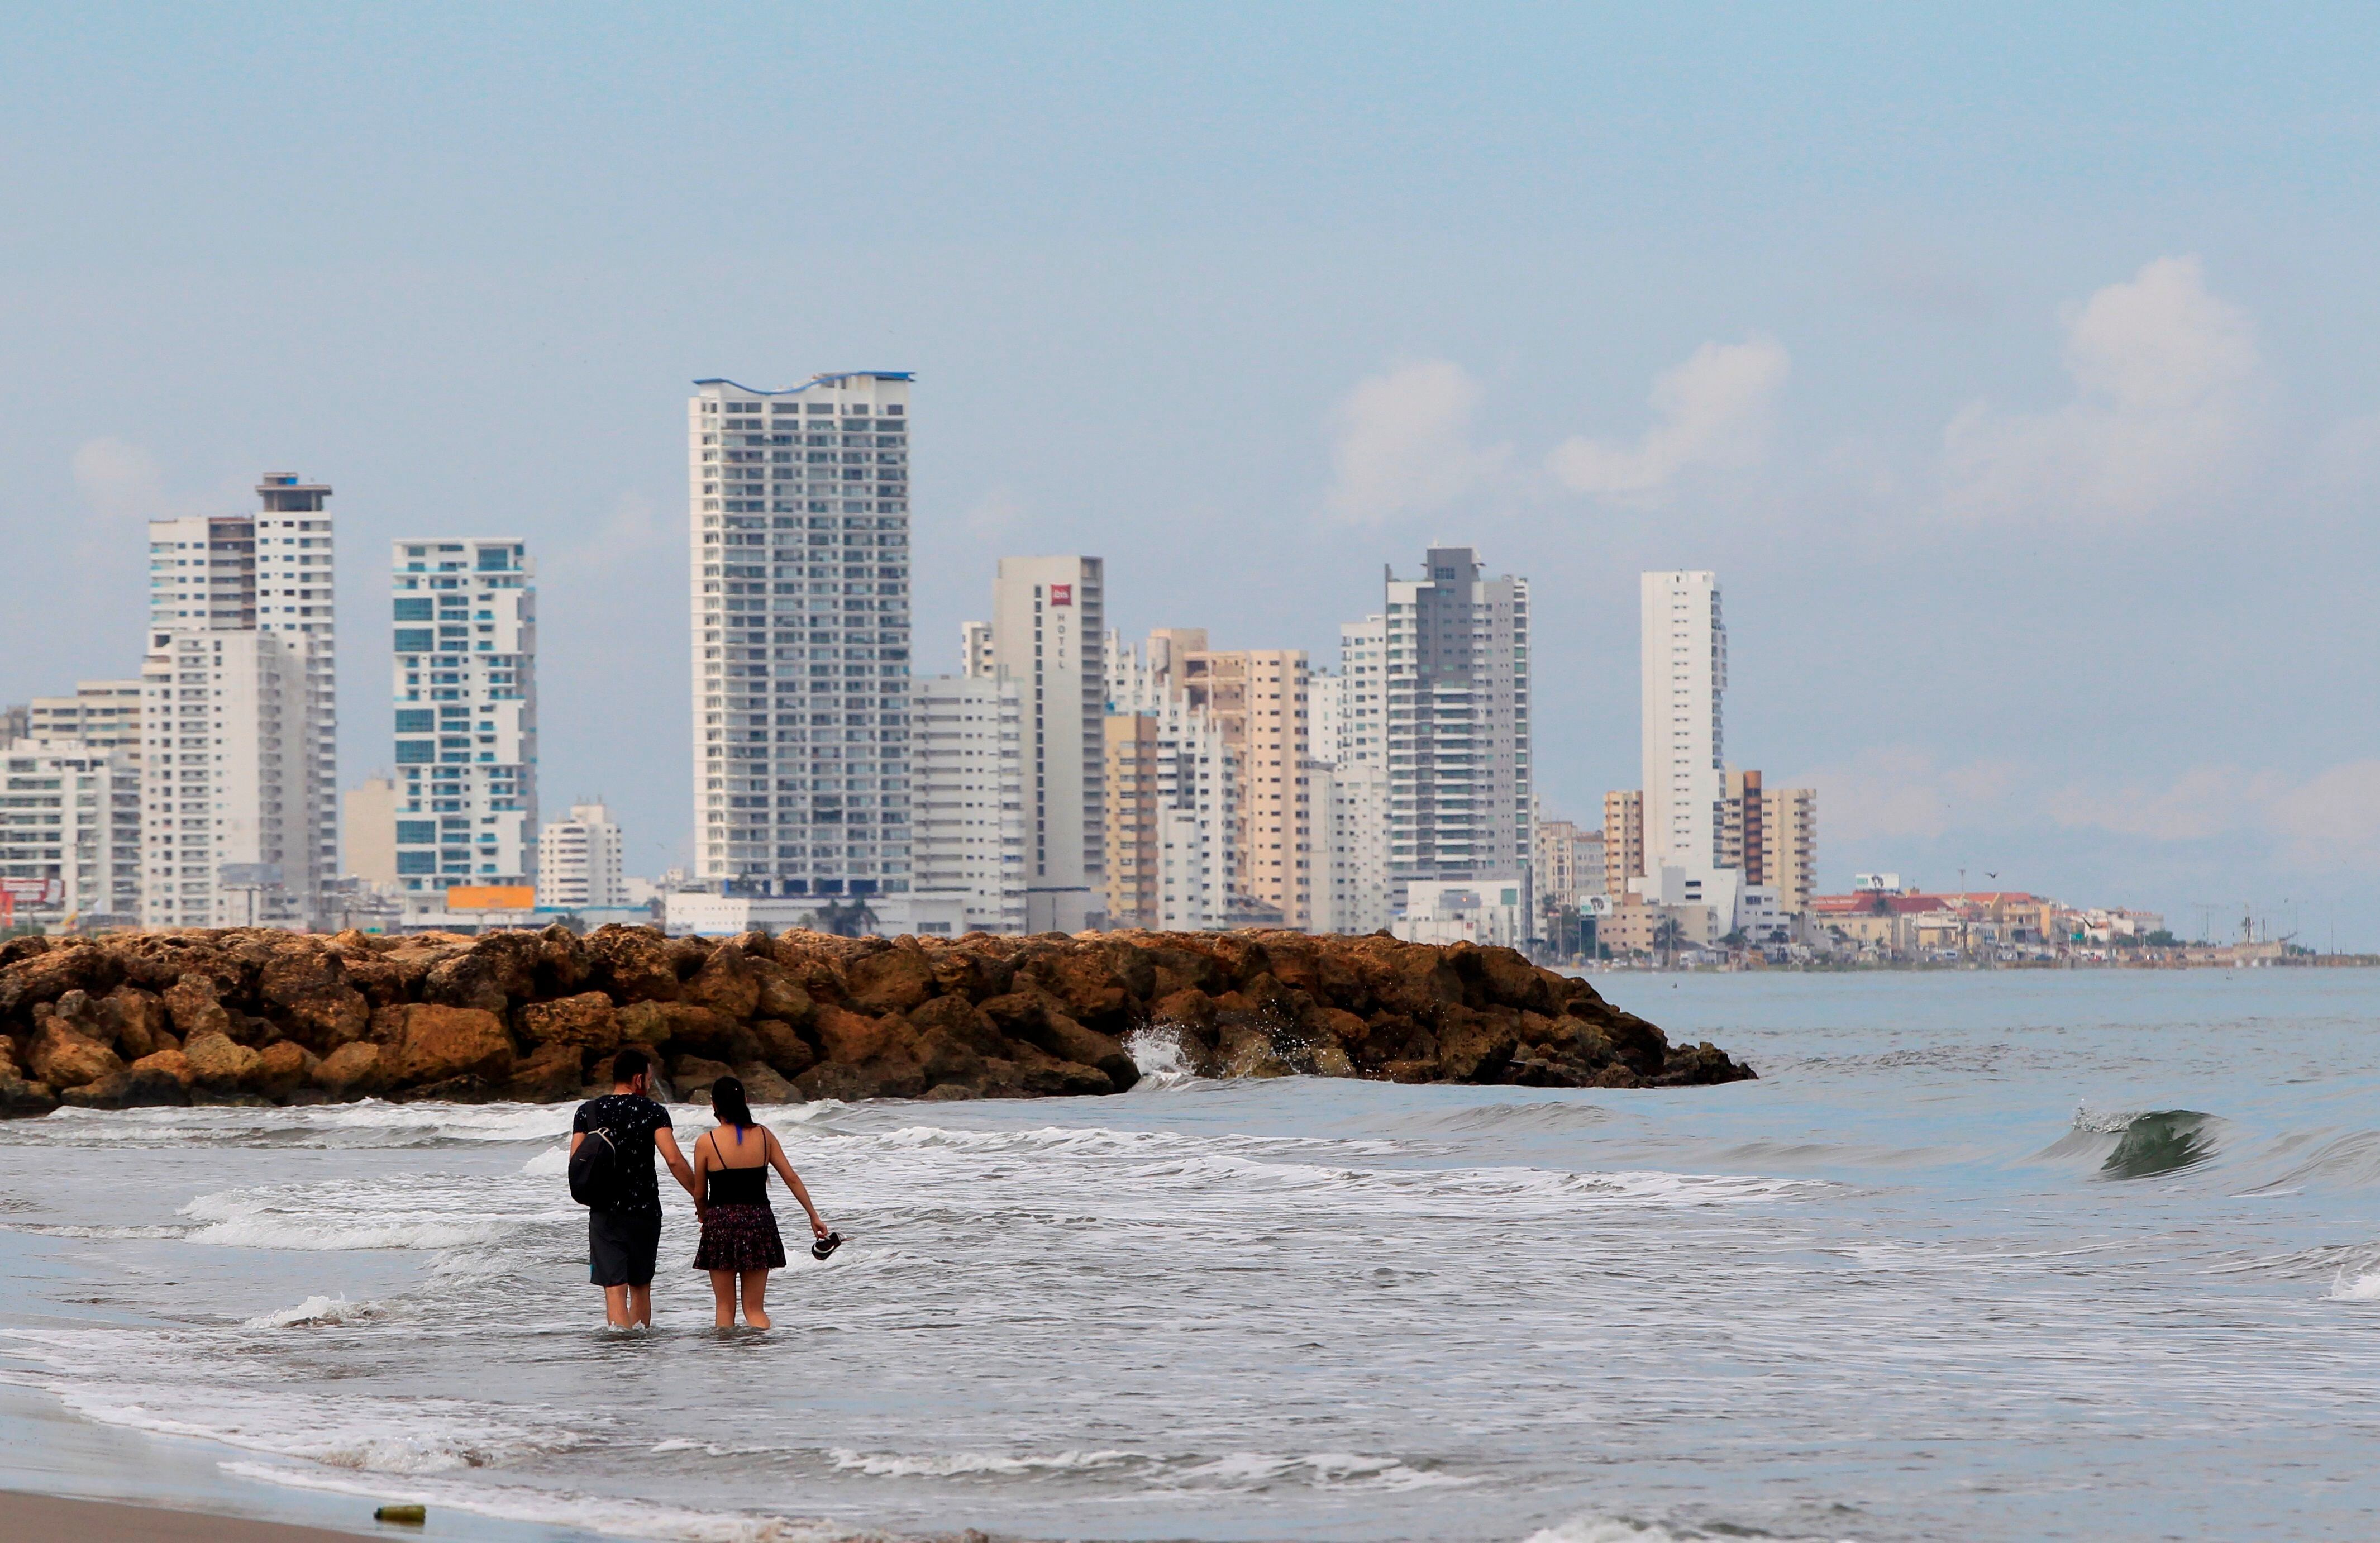 Según las autoridades, enero del 2022 fue el mes con más rescates y muertos por inmersión en las playas de Cartagena. Se contabilizaron 68 bañistas rescatados y tres ahogados